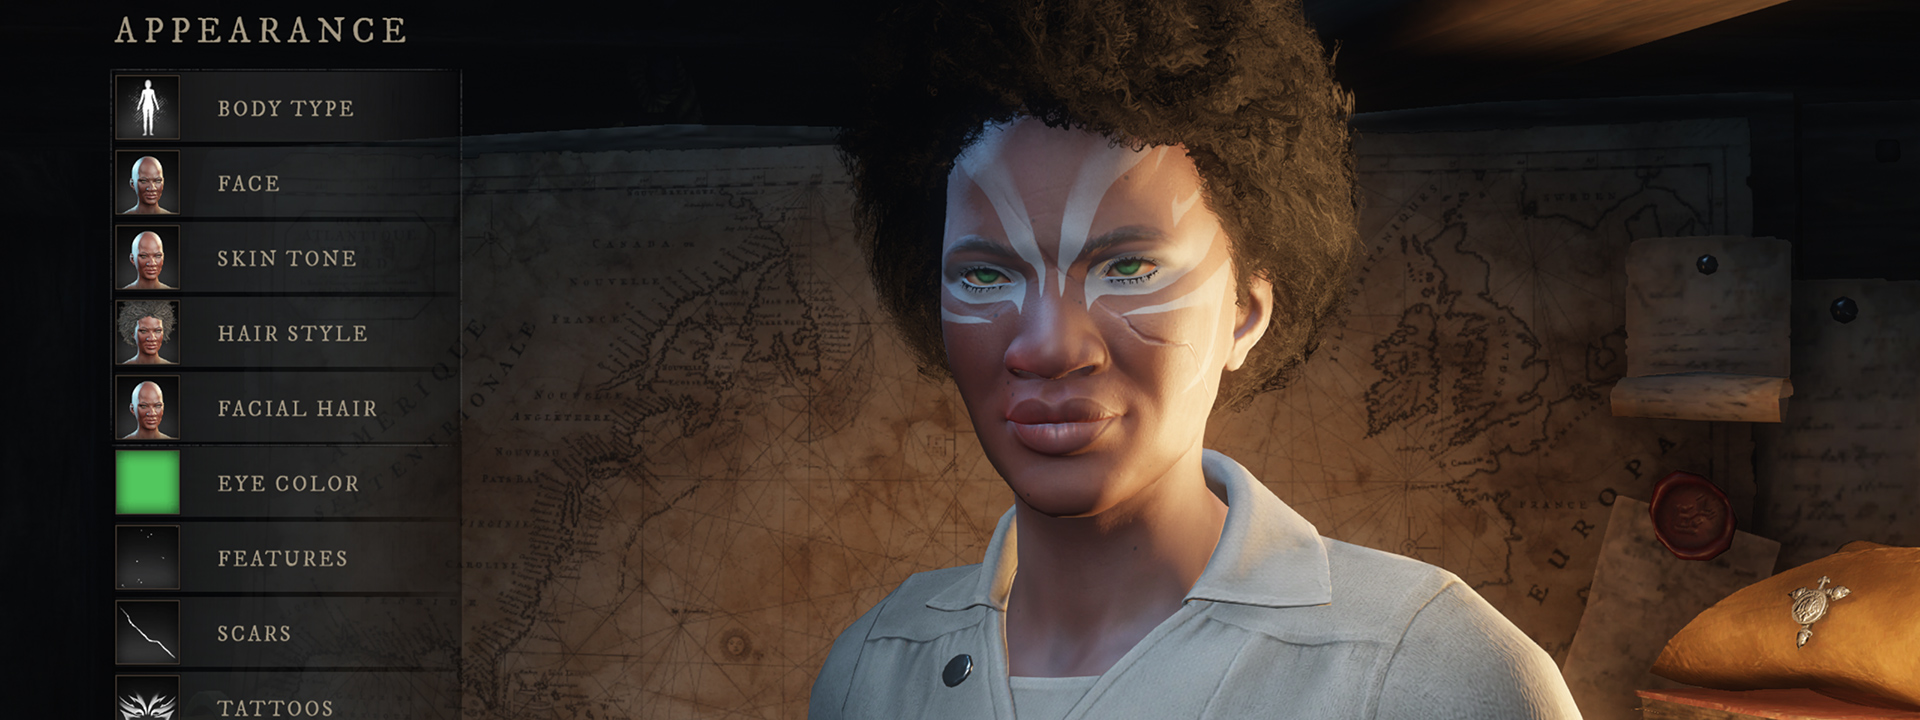 Una captura de pantalla de la interfaz de personalización de personajes en la que se ve a una persona de piel oscura con tatuajes de color celeste alrededor de sus ojos.